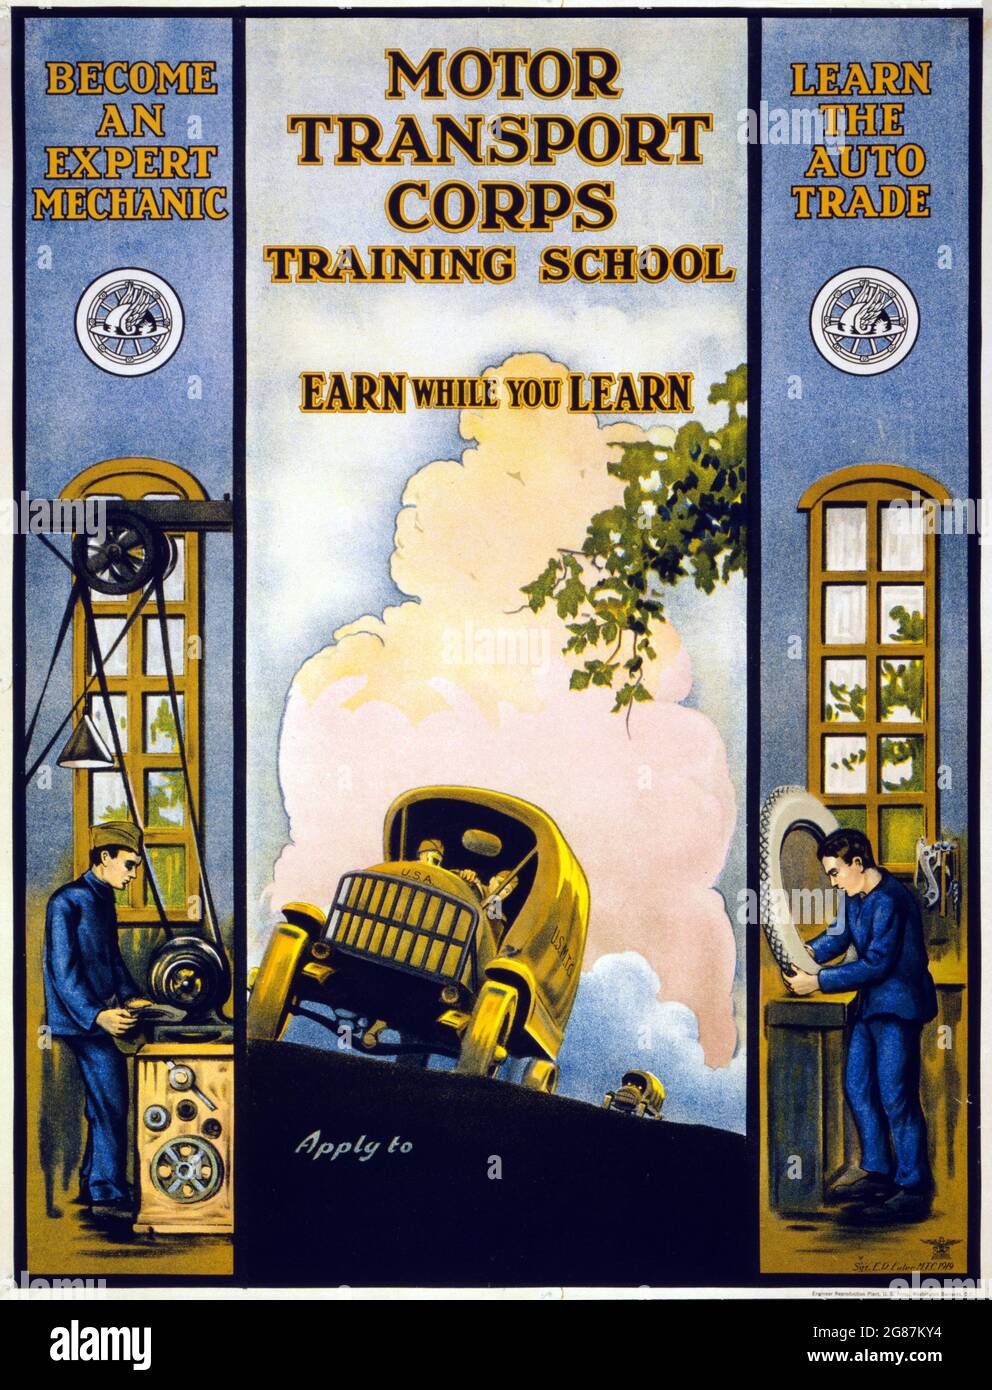 Vintage-Werbung. Motor Transport Corps Training School Verdienen Sie, während Sie lernen. Sgt. E.R. Euler, MTC 1919. U.S. Army Motor Transport Corps. Stockfoto